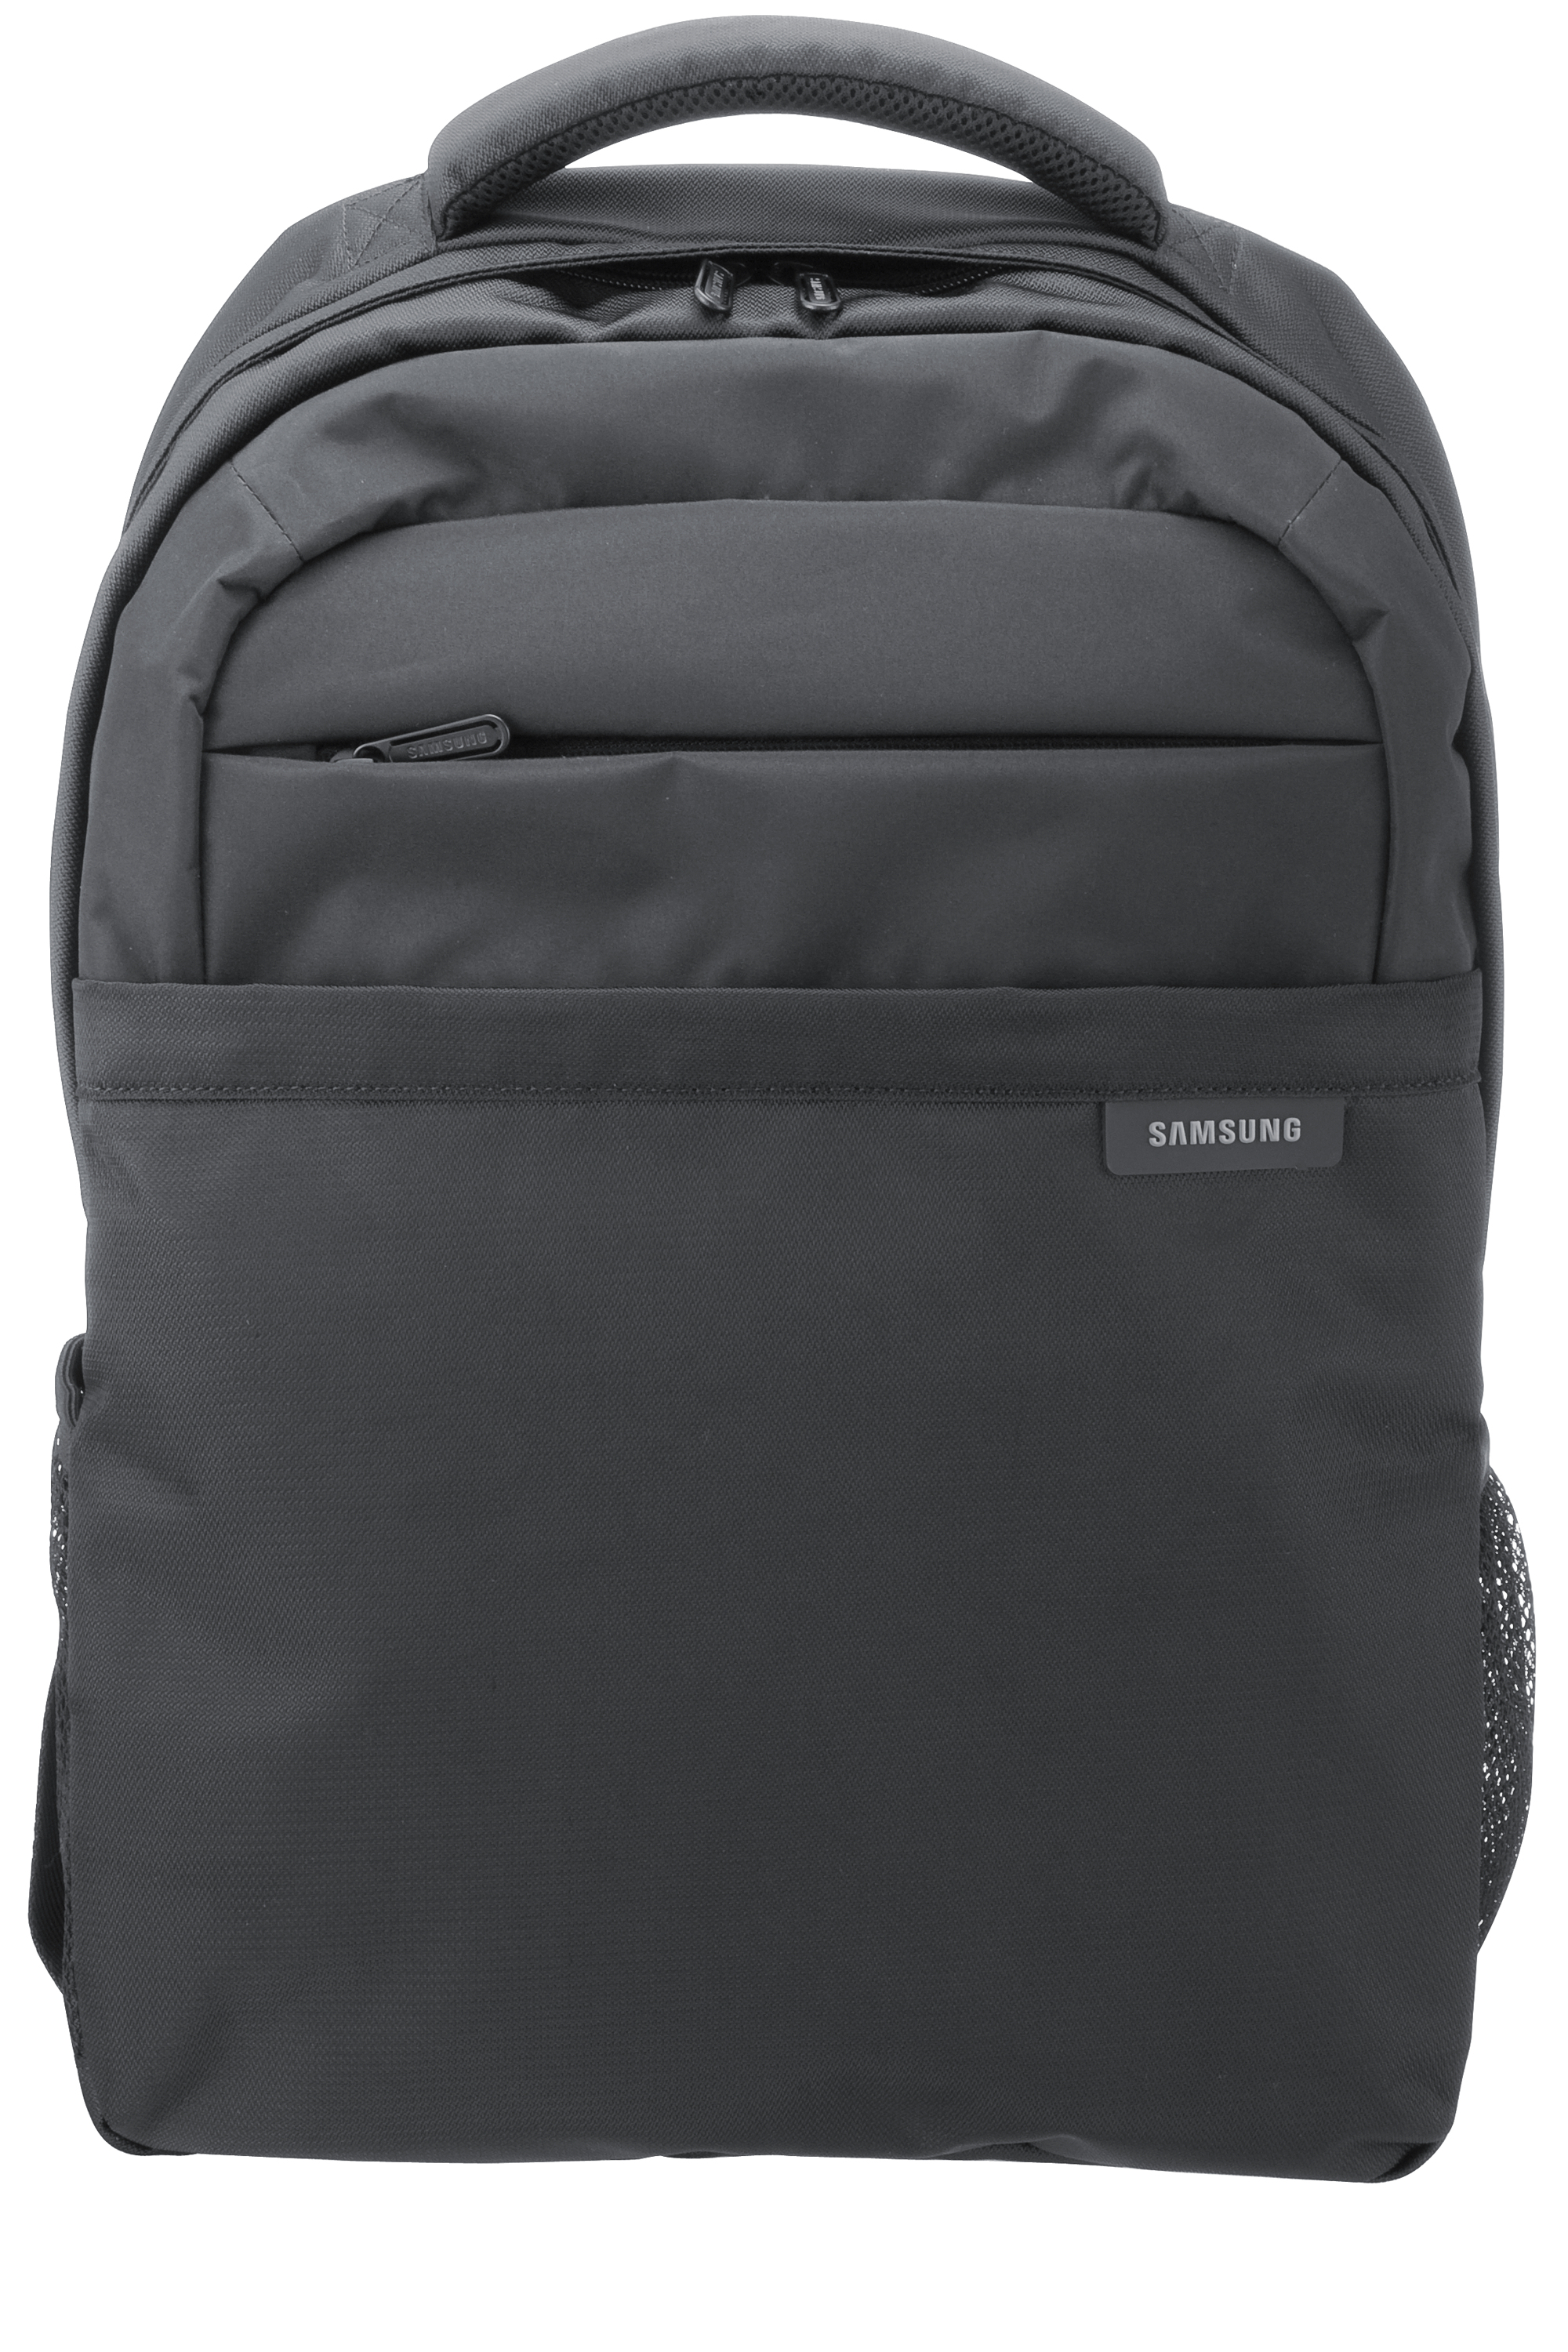 Samsung Backpack